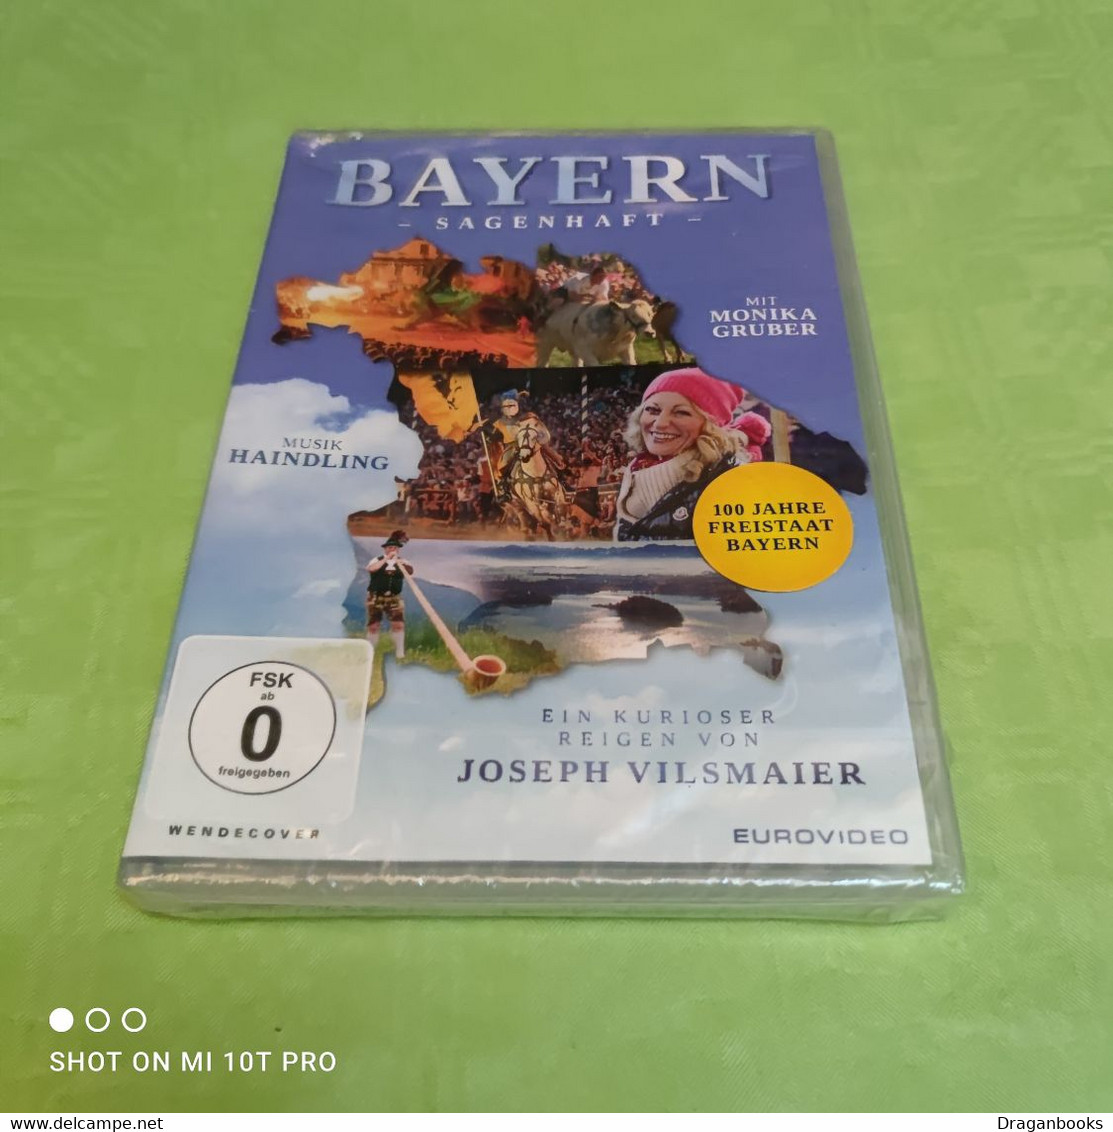 Bayern Sagenhaft - Reise